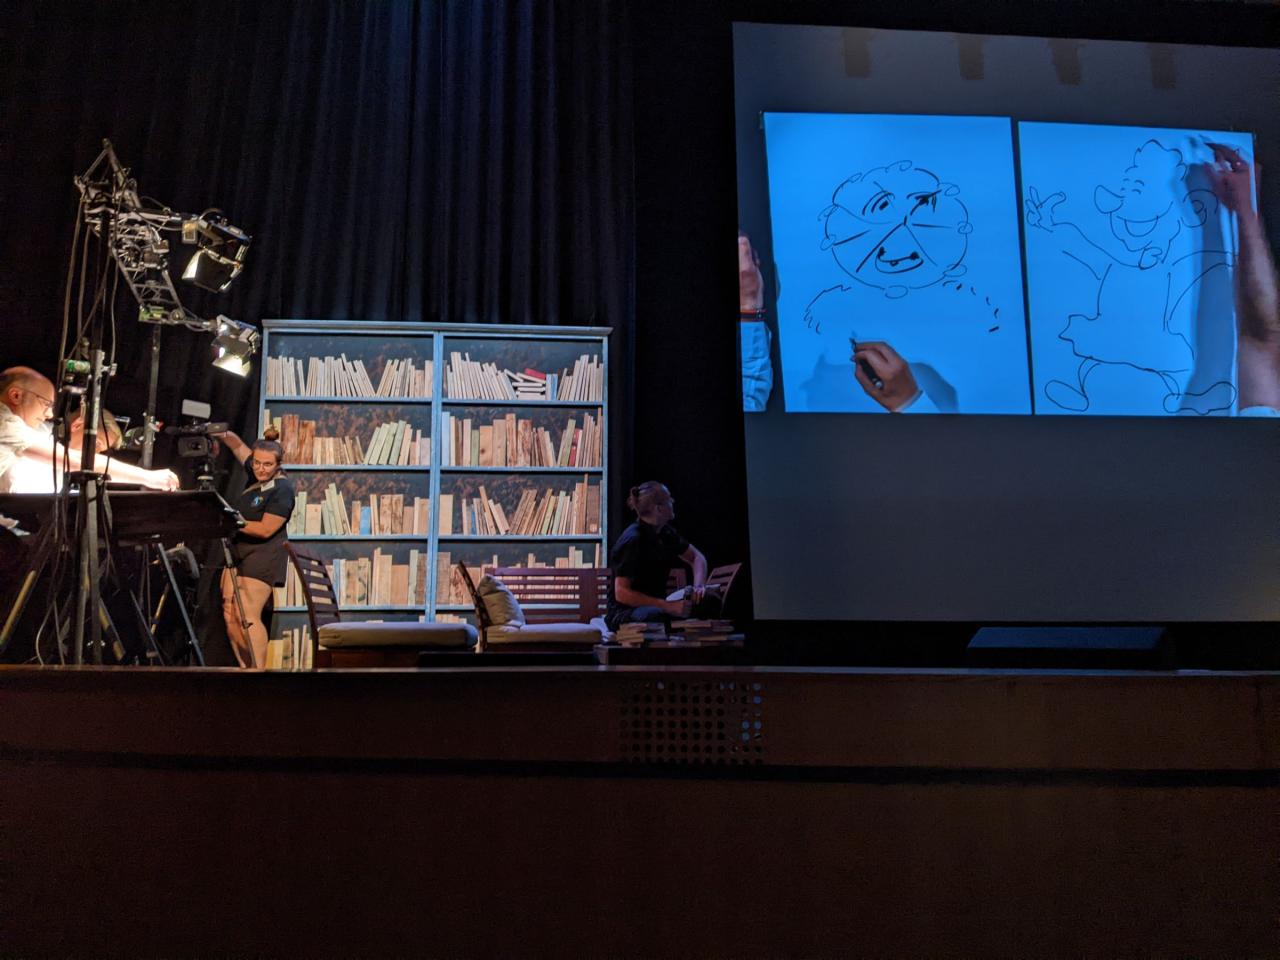 Sur une scène, deux auteurs dessinent sur une table à dessin. Leurs dessins sont reproduits sur un grand écran.